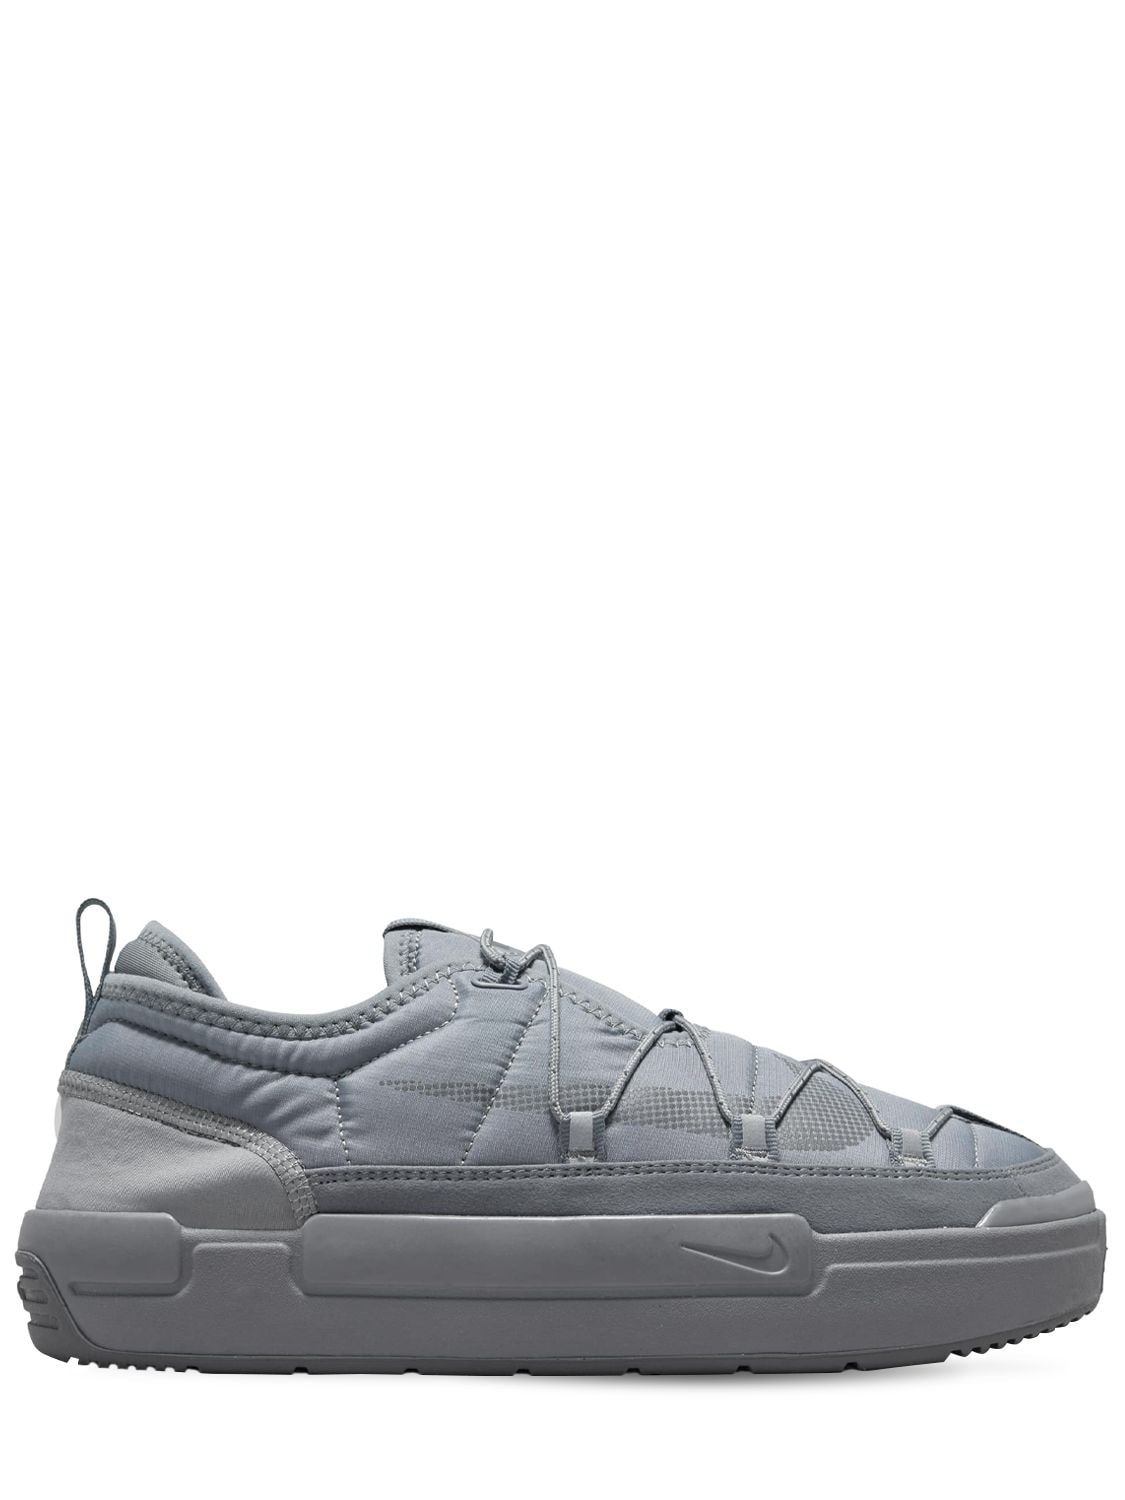 Nike Offline Pack Sneakers In Grey | ModeSens